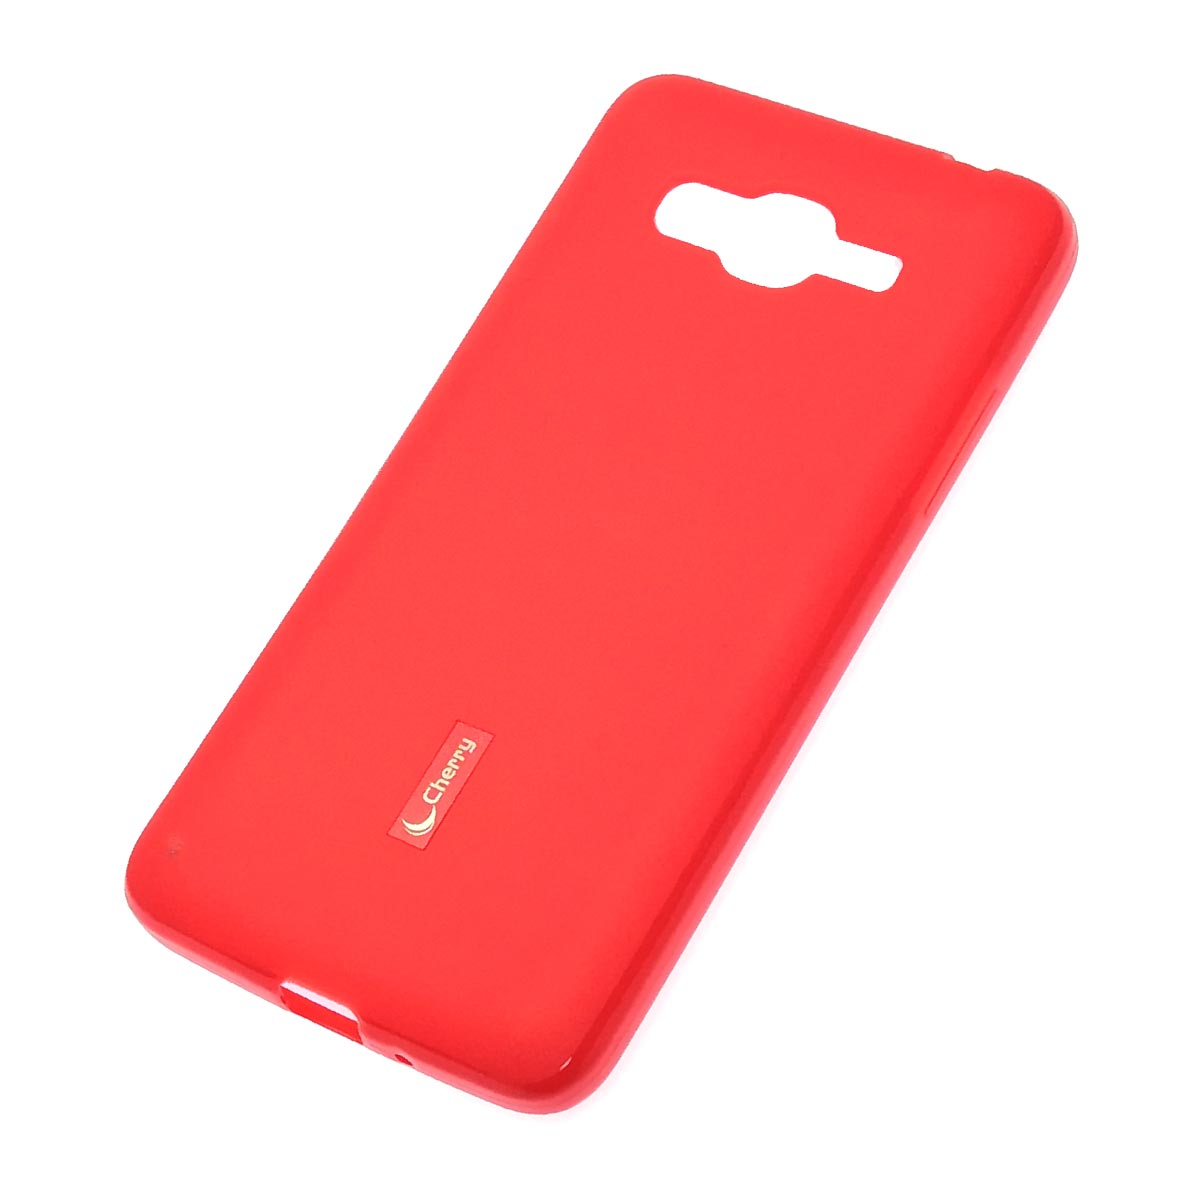 Чехол накладка Cherry для SAMSUNG Galaxy J2 Prime (SM-G532F), силикон, цвет красный